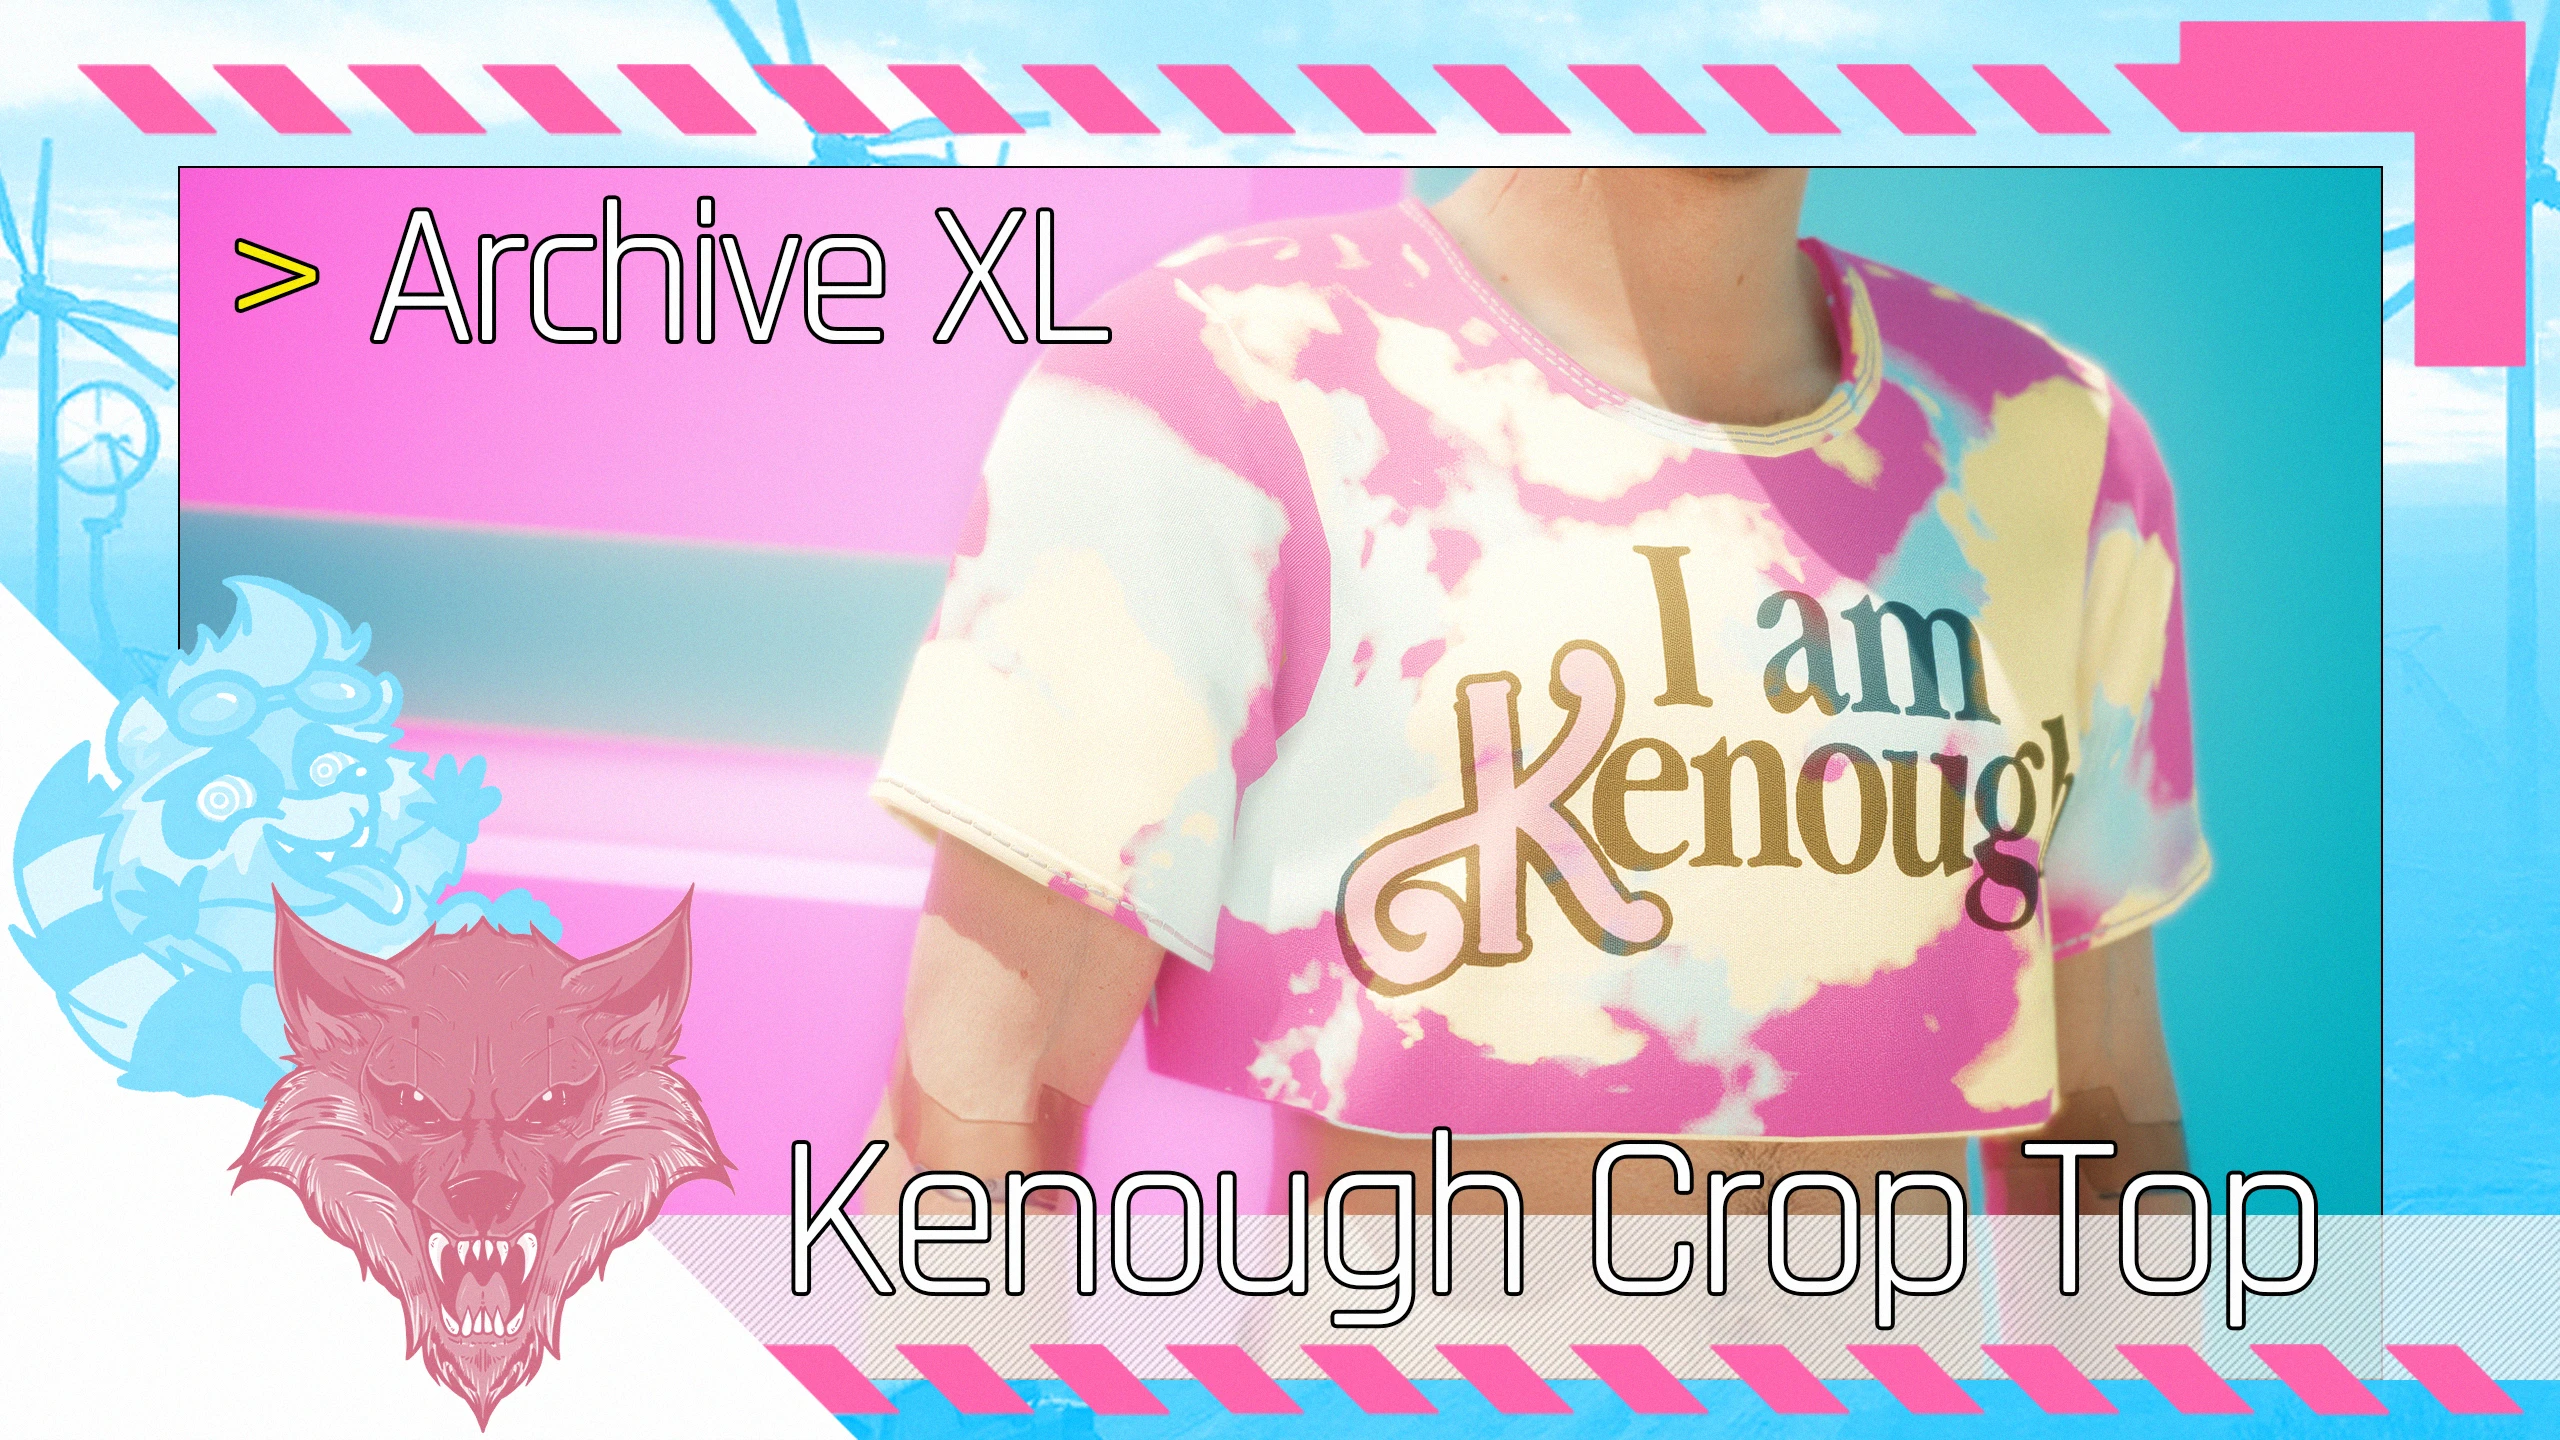 I am Kenough. Kenough Barbie. You are Kenough.